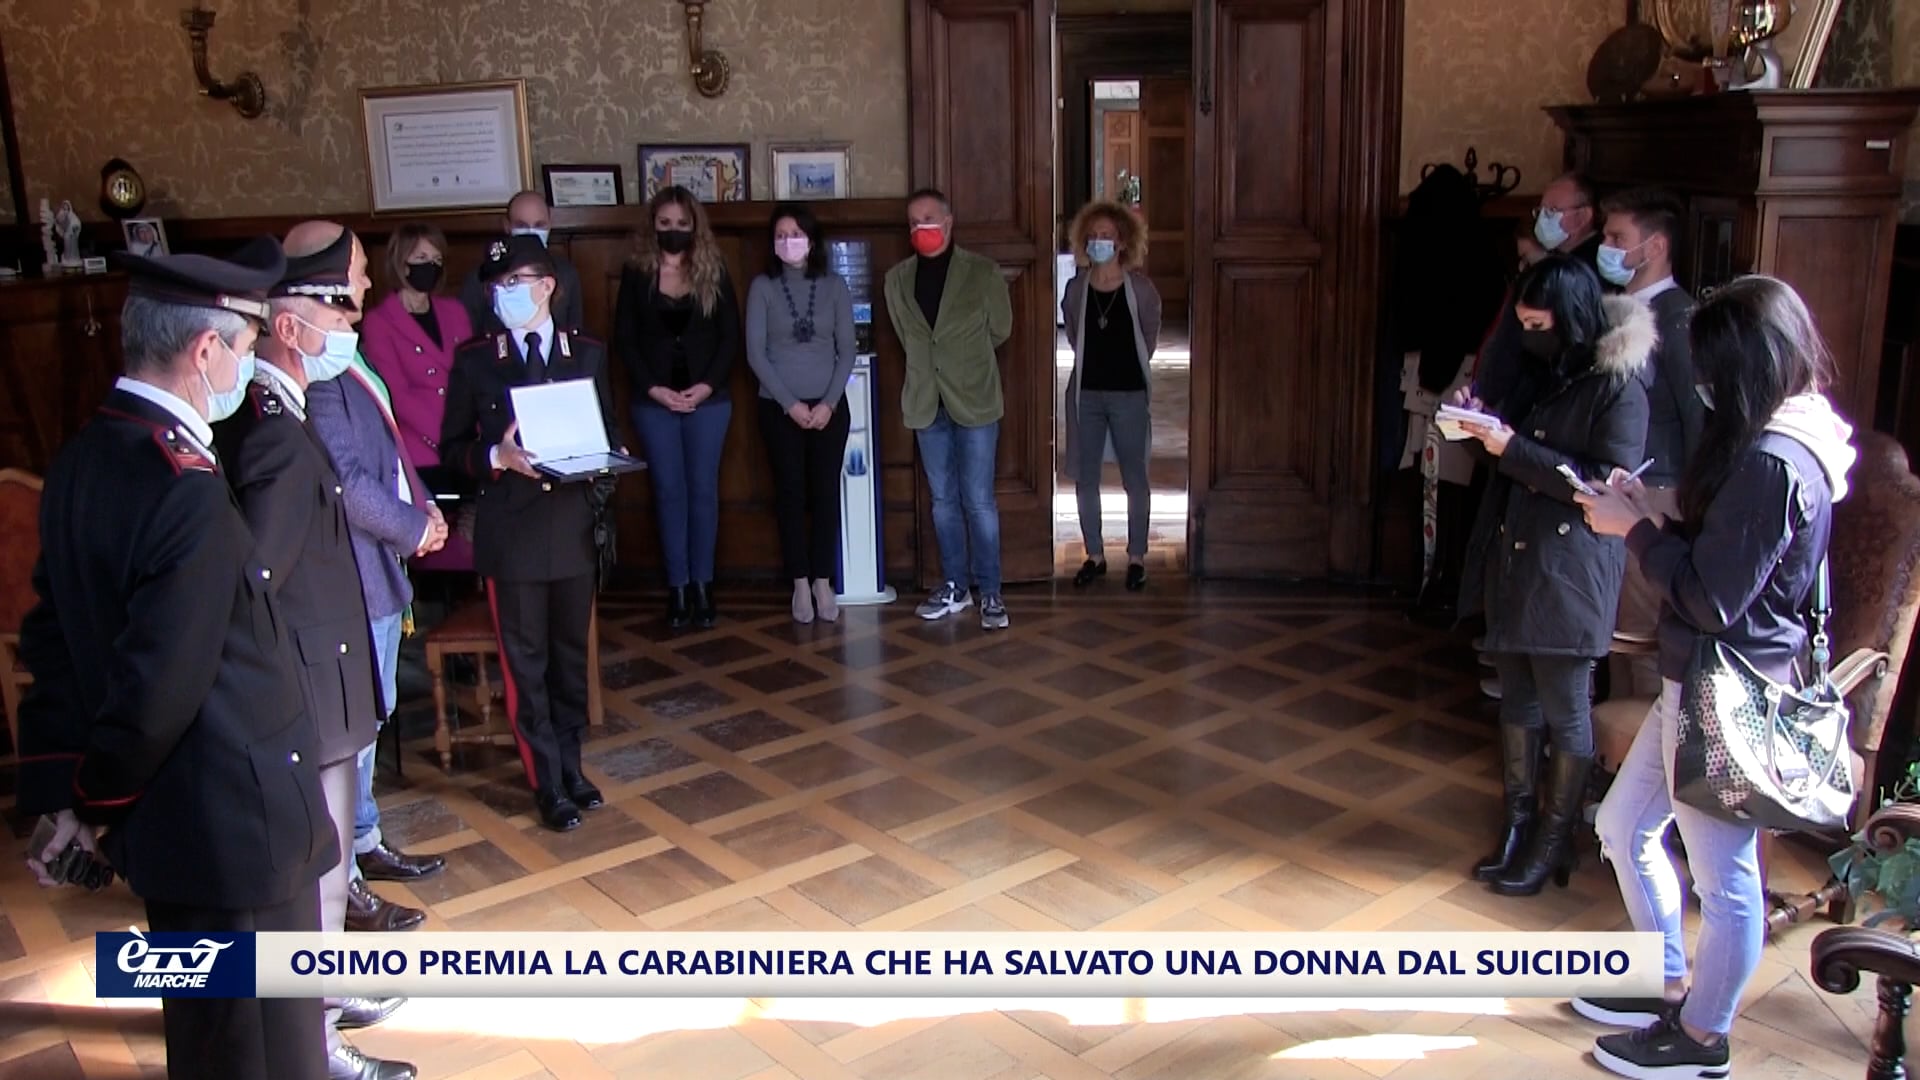 Osimo premia la carabiniera che ha salvato una donna dal suicidio